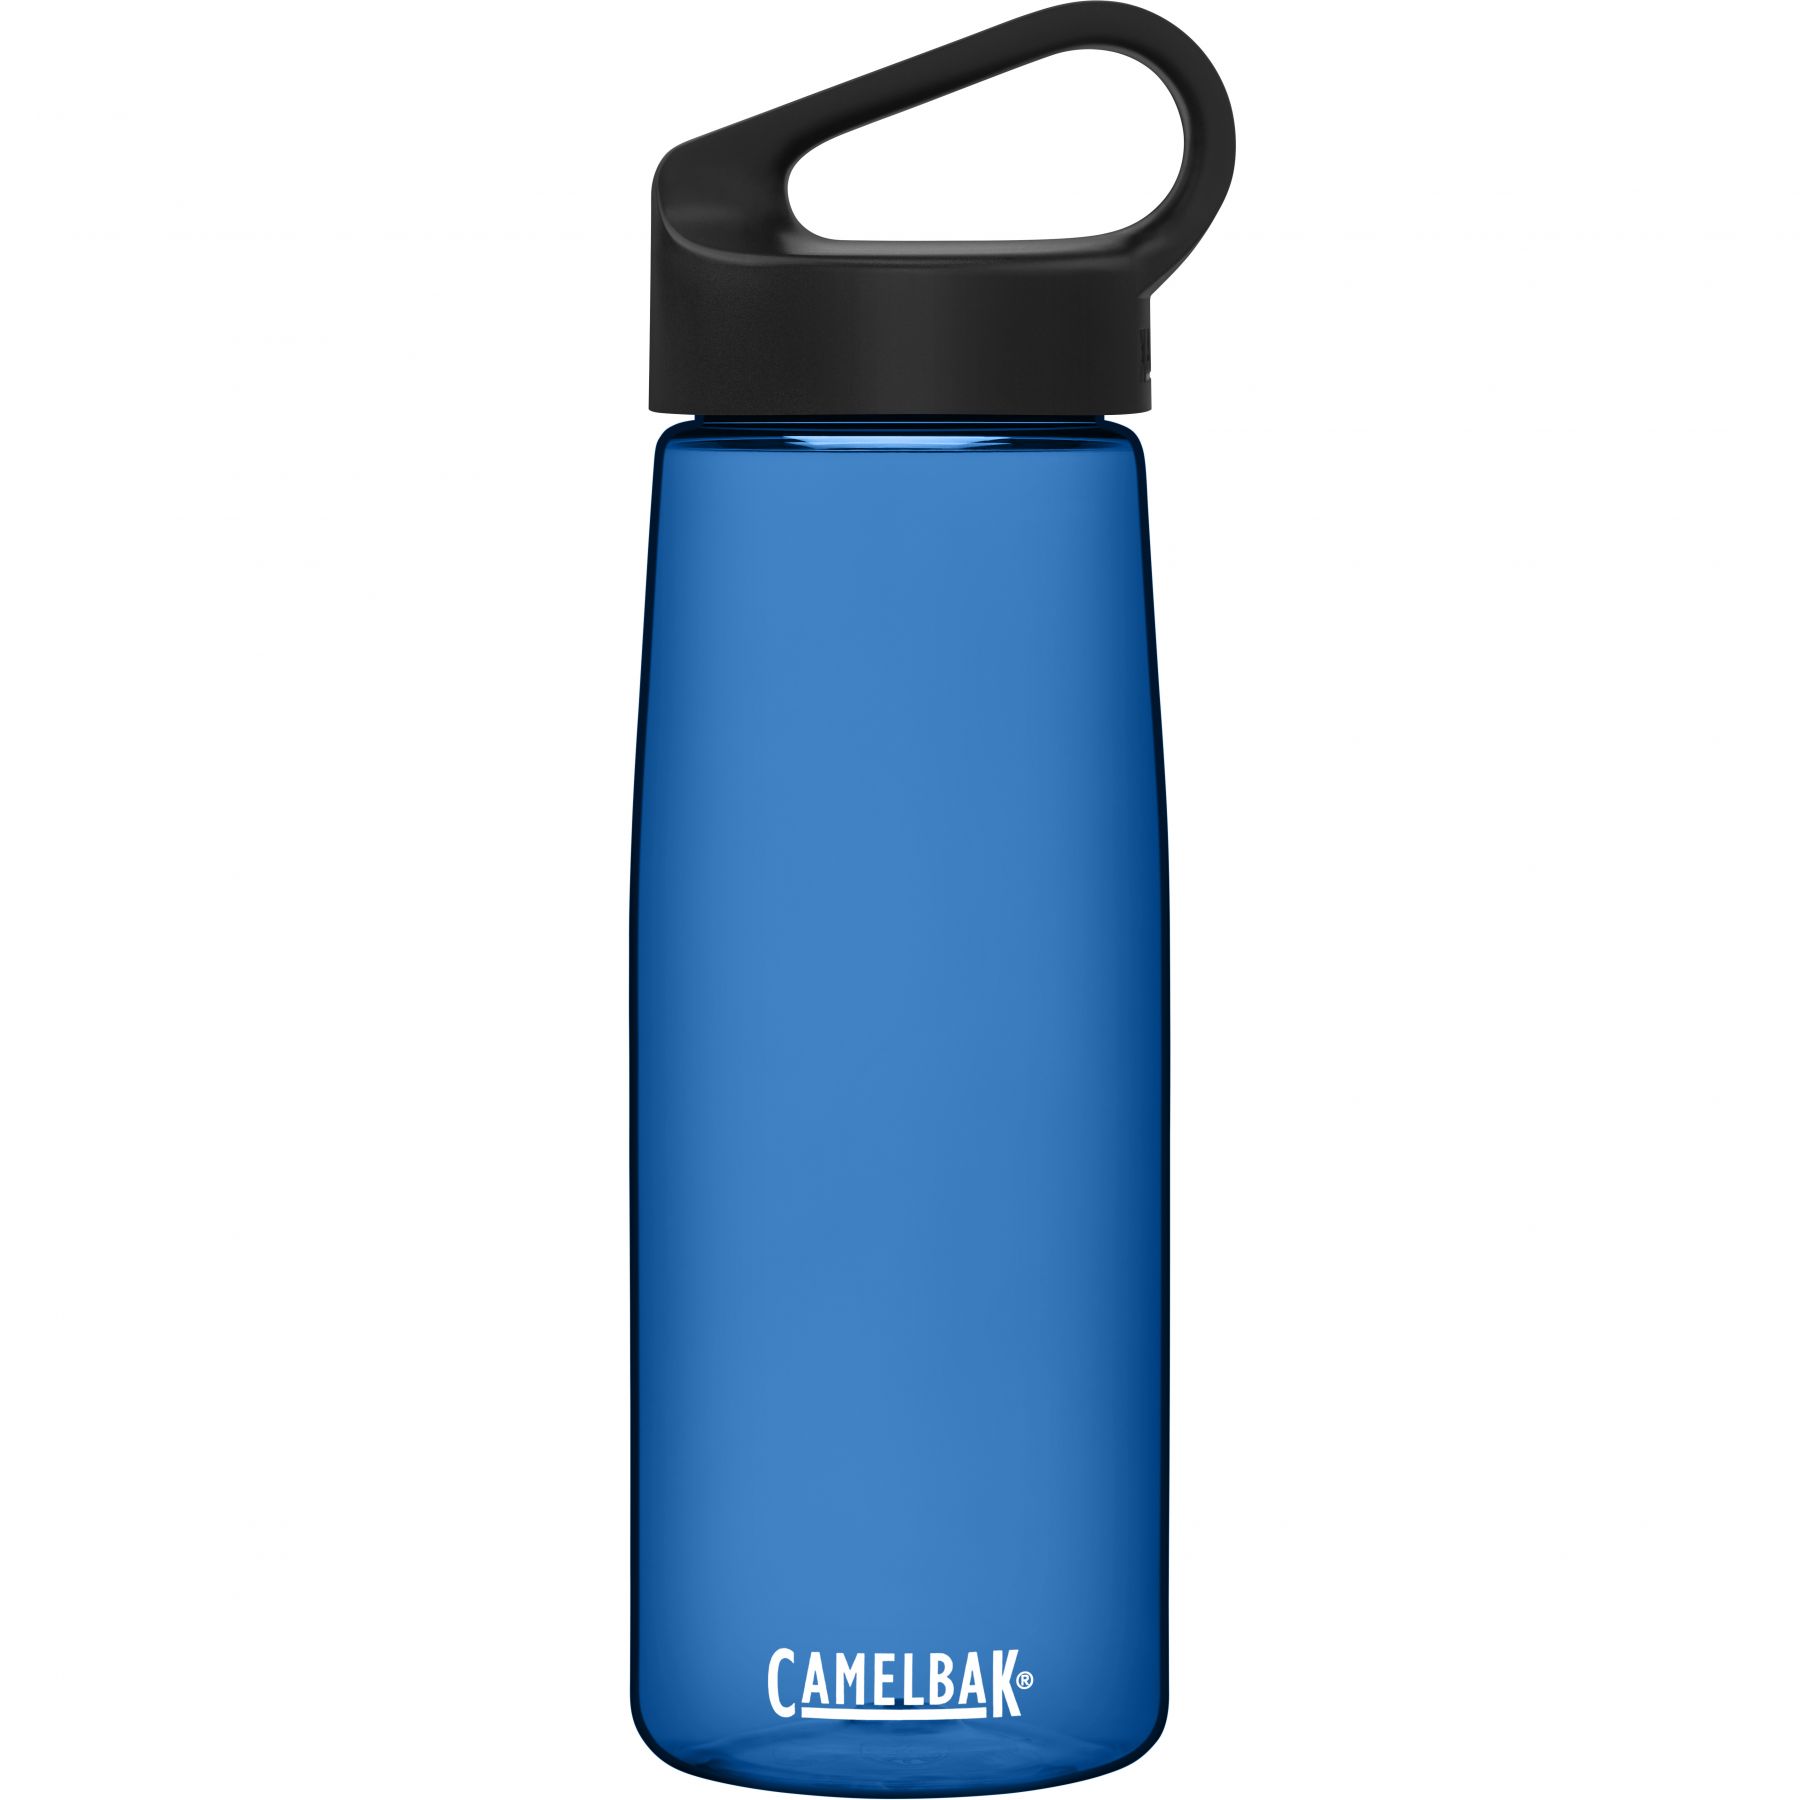 Brug CamelBak Carry Cap, drikkedunk, 0,75L, blå til en forbedret oplevelse